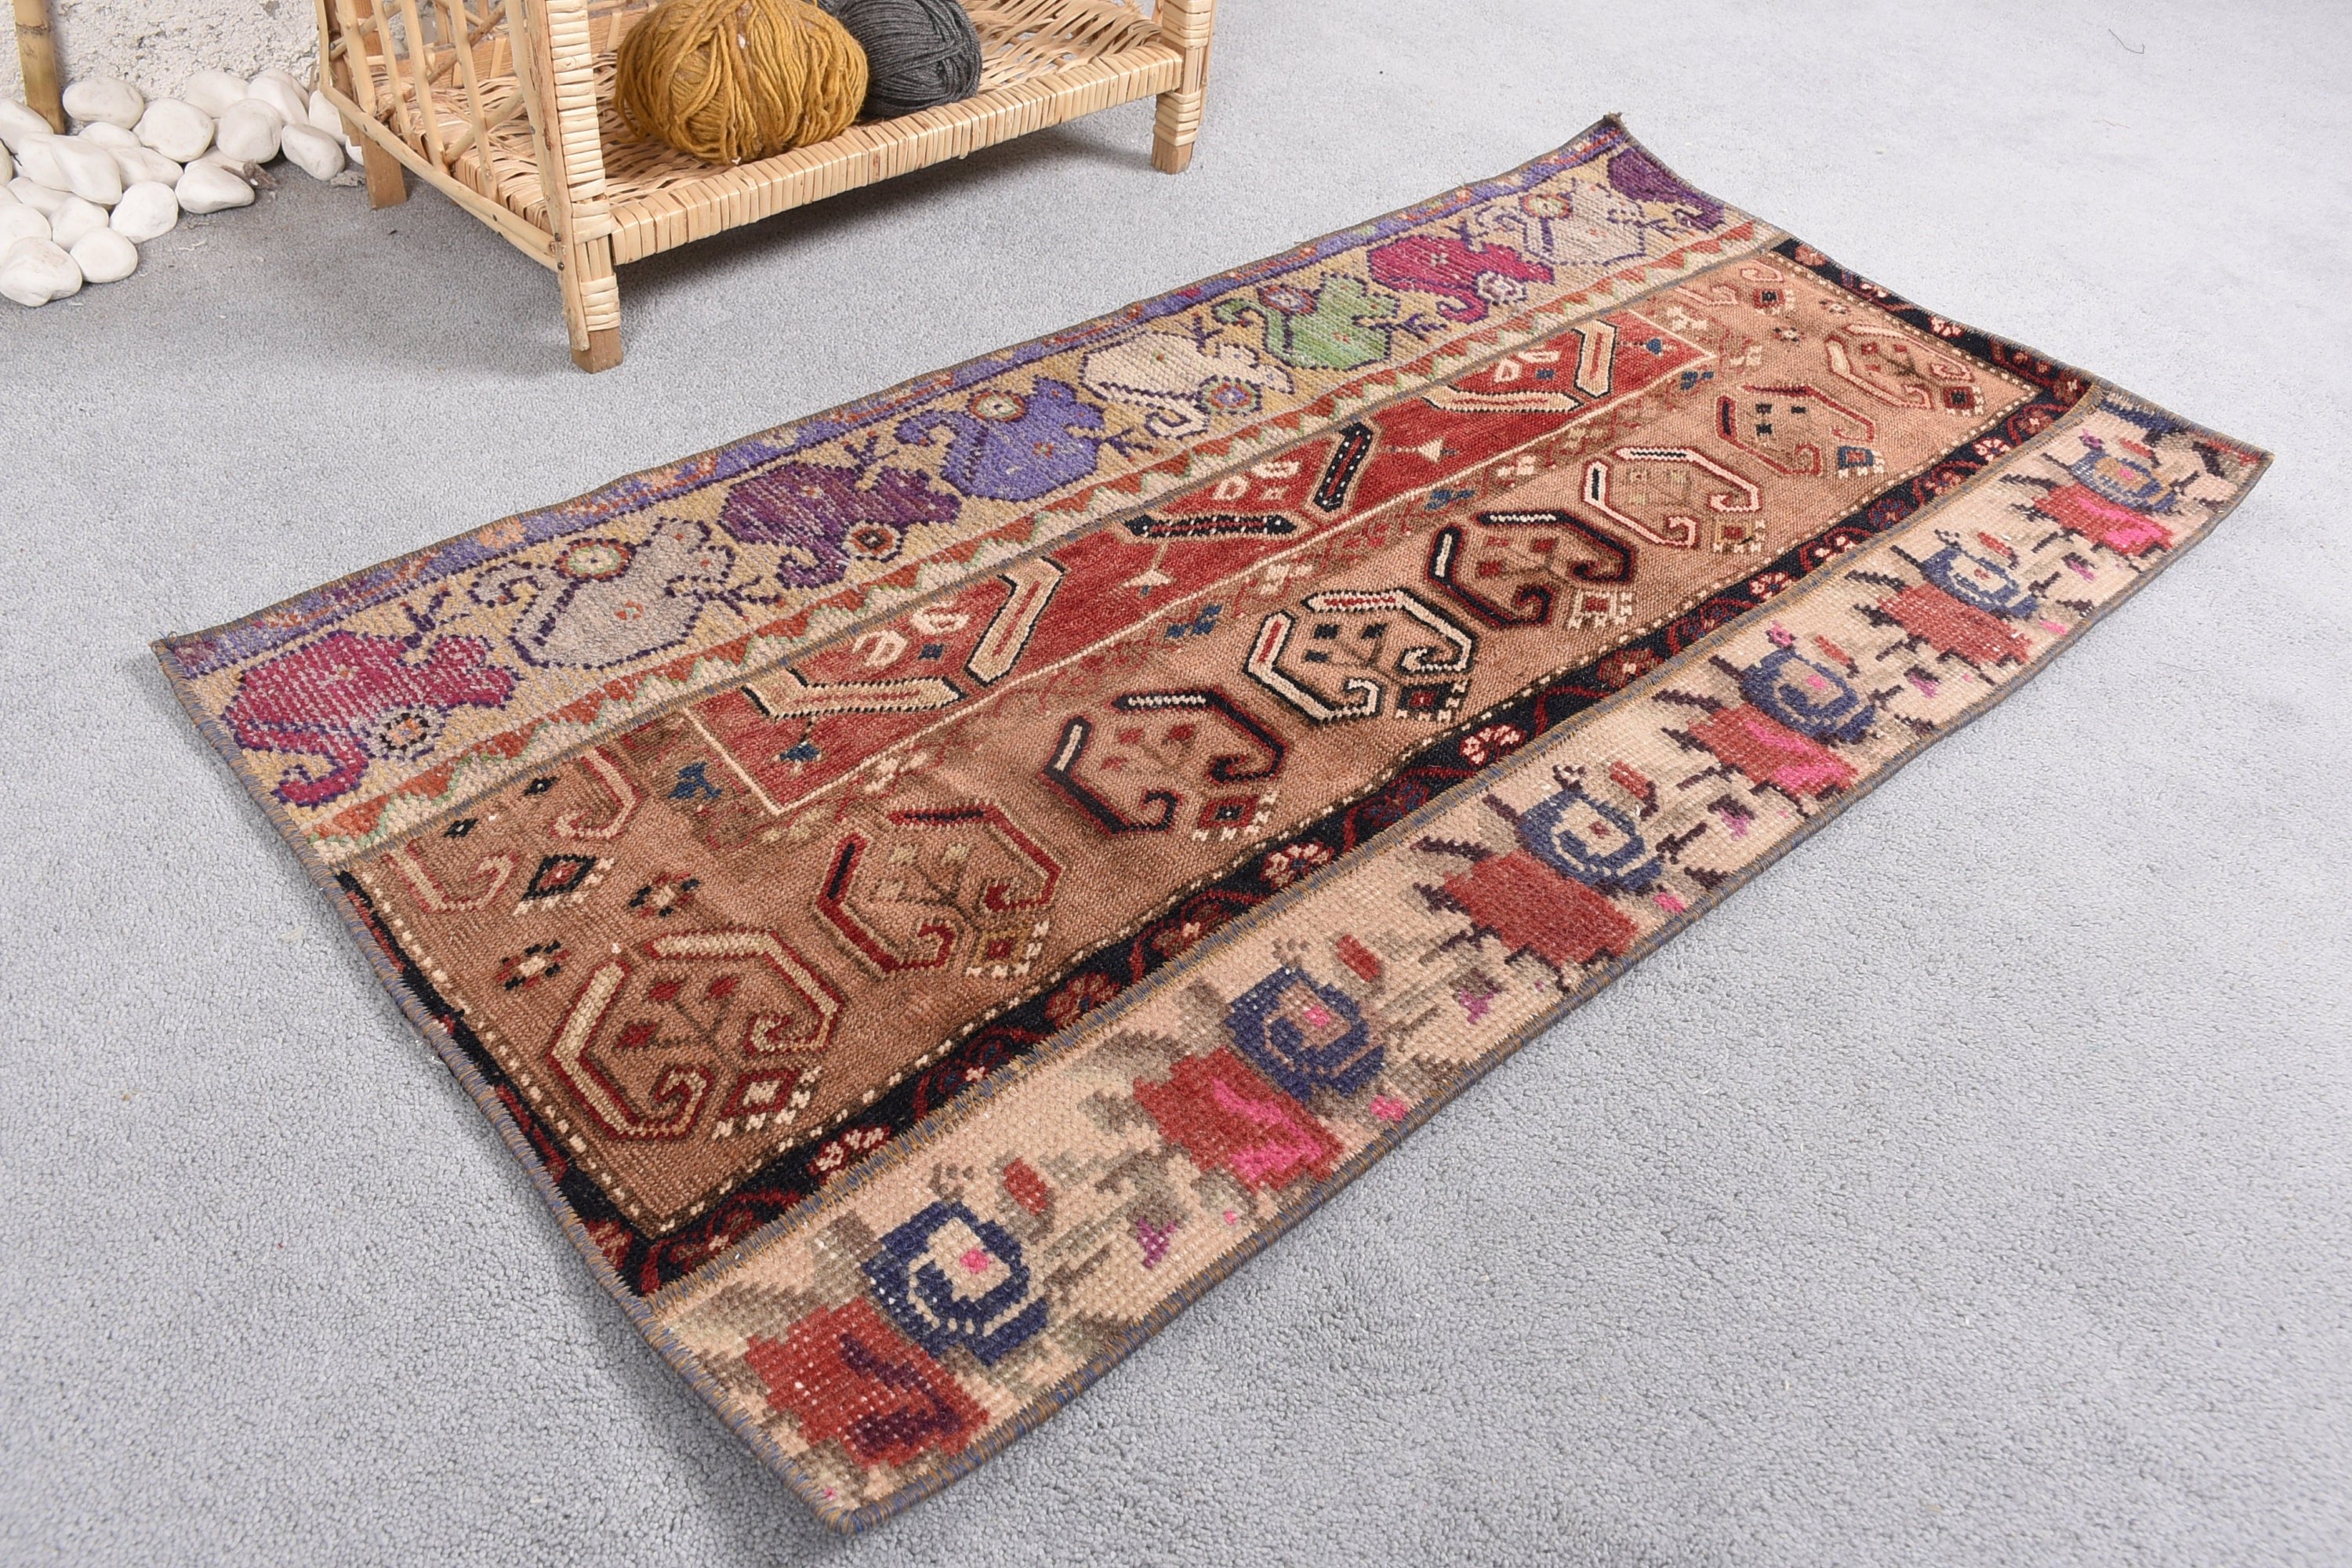 Turkish Rugs, Decorative Rug, Vintage Rug, Brown Wool Rug, Bathroom Rug, Rugs for Entry, Bedroom Rug, 1.8x3.5 ft Small Rug, Wool Rug